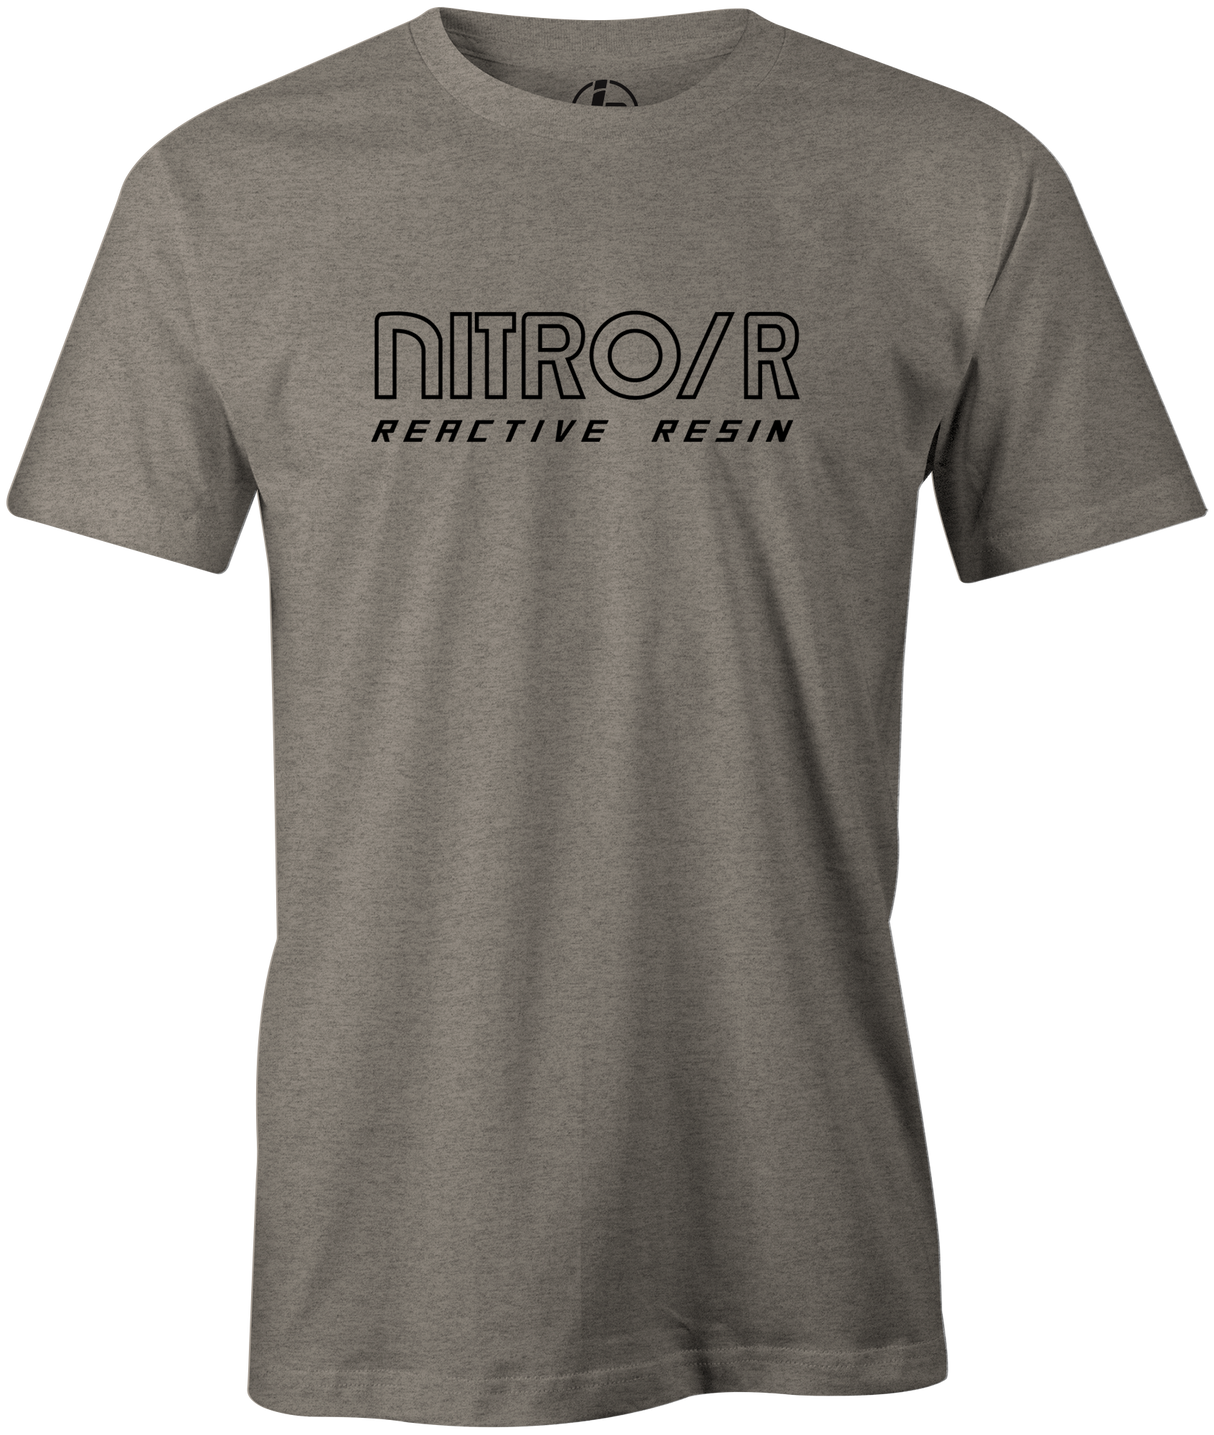 Nitro/R Men's T-Shirt, Green, Bowling, bowling ball, ebonite, throwback, retro, vintage, old school, tshirt, tee, tee-shirt, tee shirt.